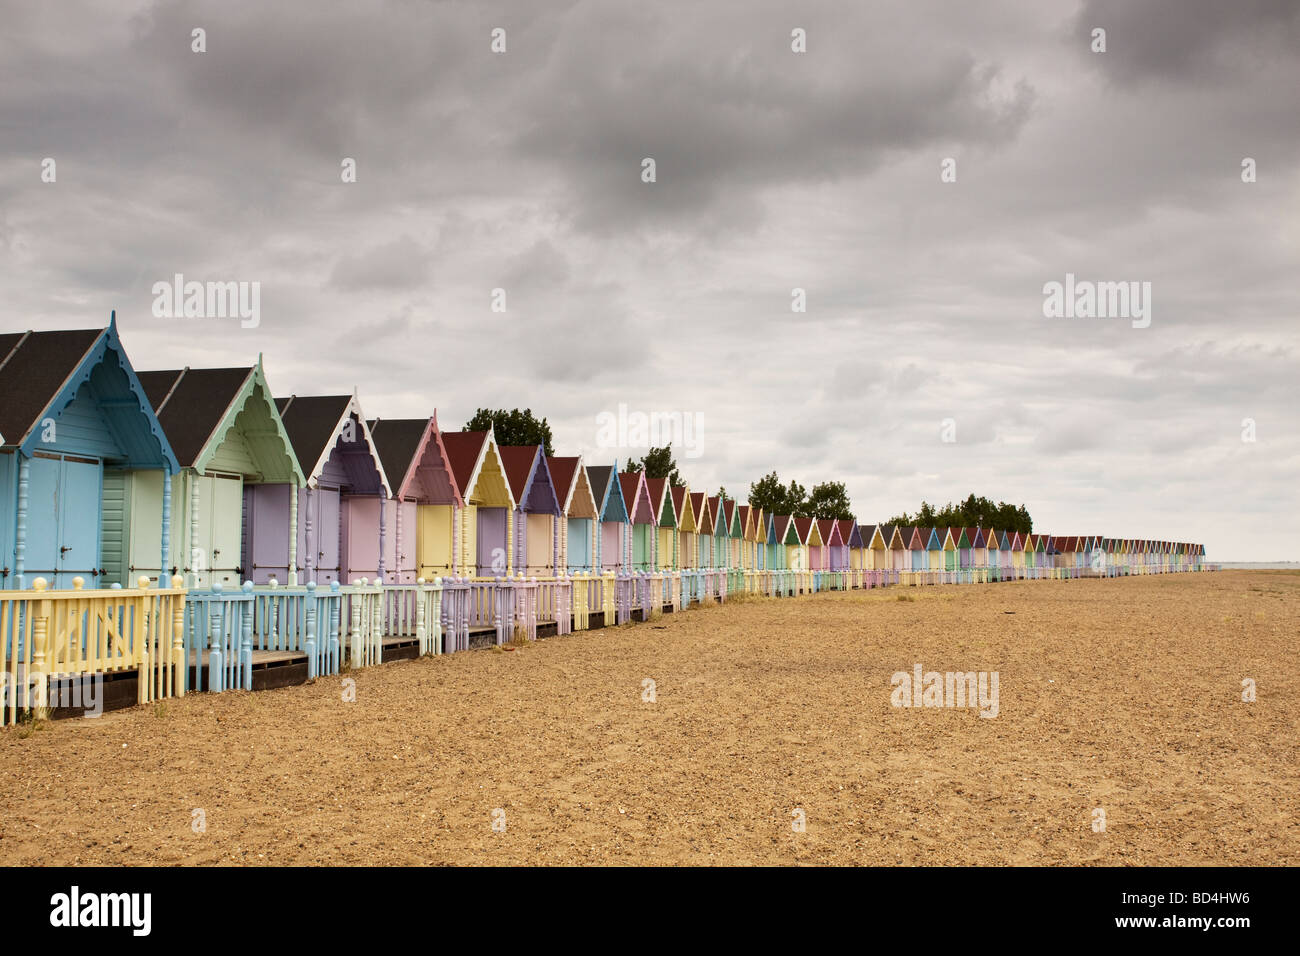 Rangée de cabines de plage de couleur pastel, Mersea Island, Essex, UK Banque D'Images